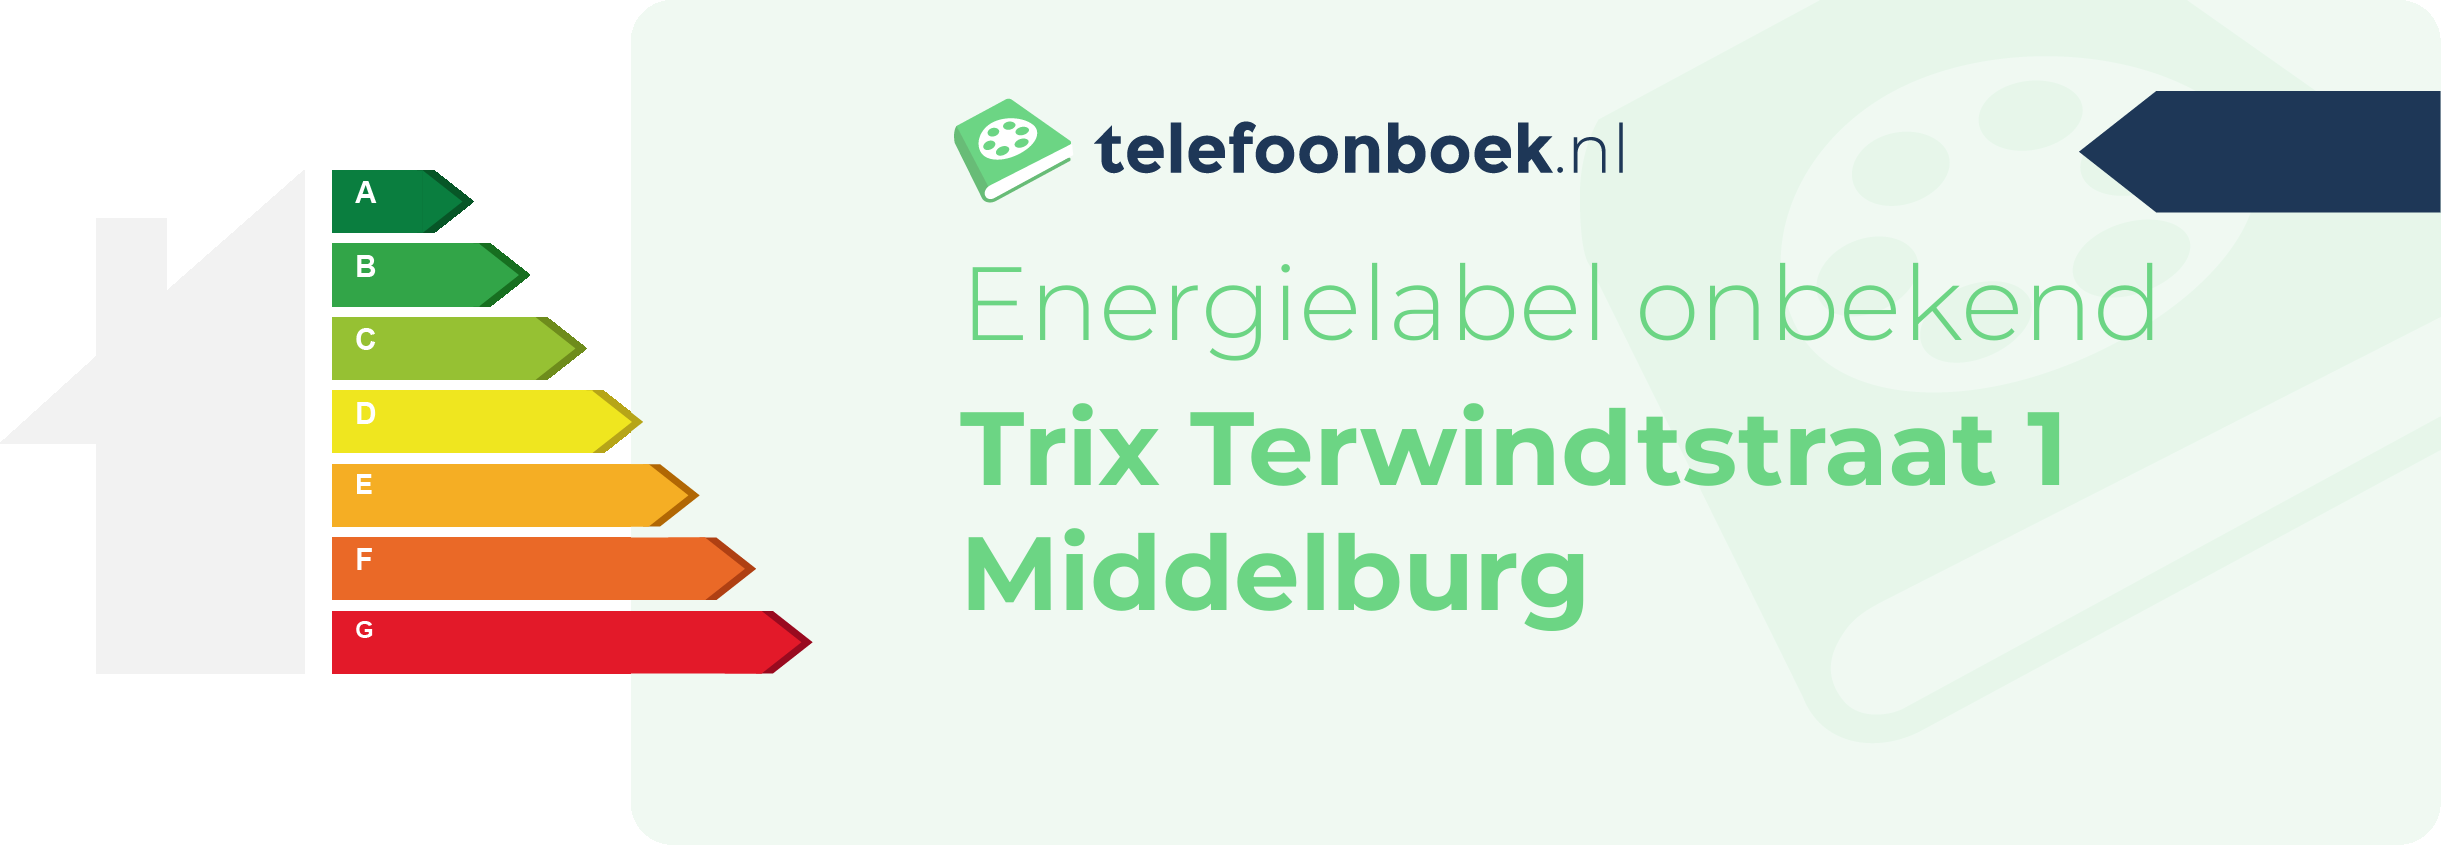 Energielabel Trix Terwindtstraat 1 Middelburg